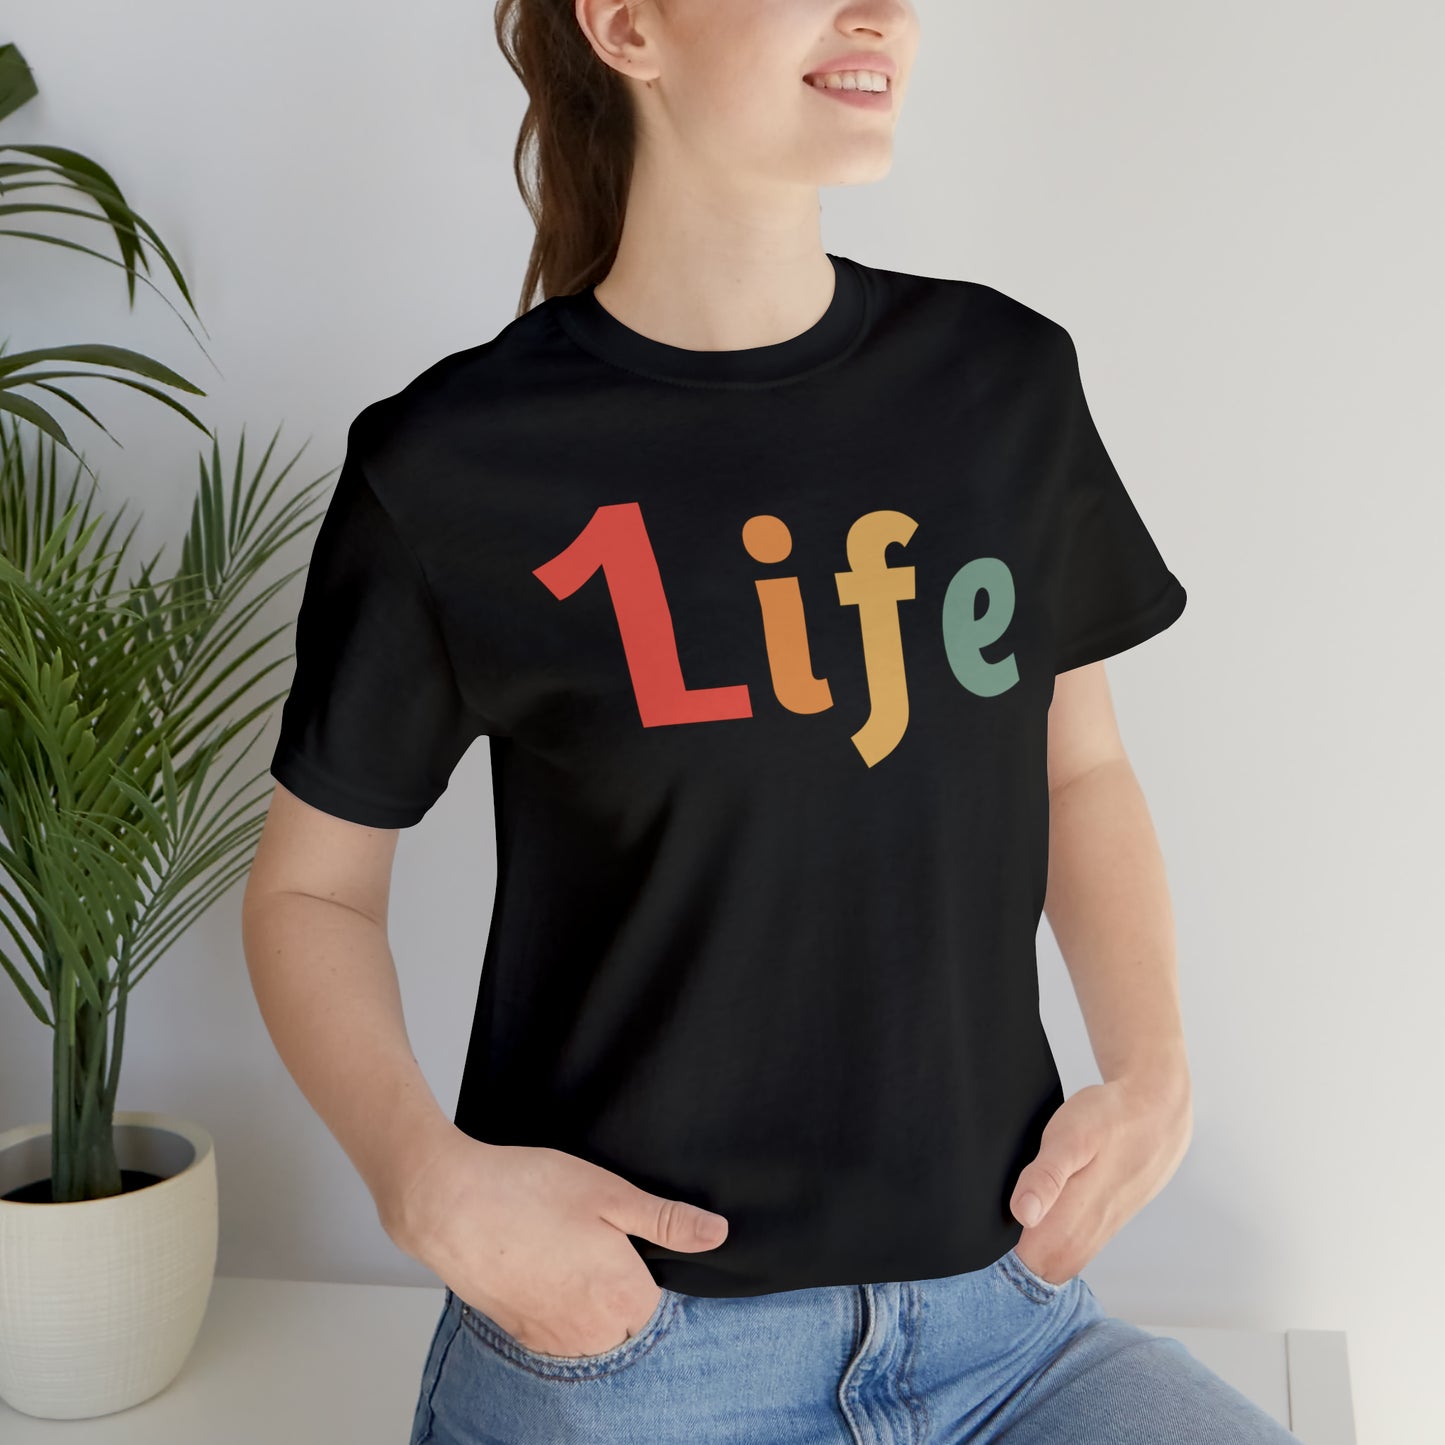 Retro One life Shirt 1life shirt Live Your Life You Only Have One Life To Live Retro Shirt